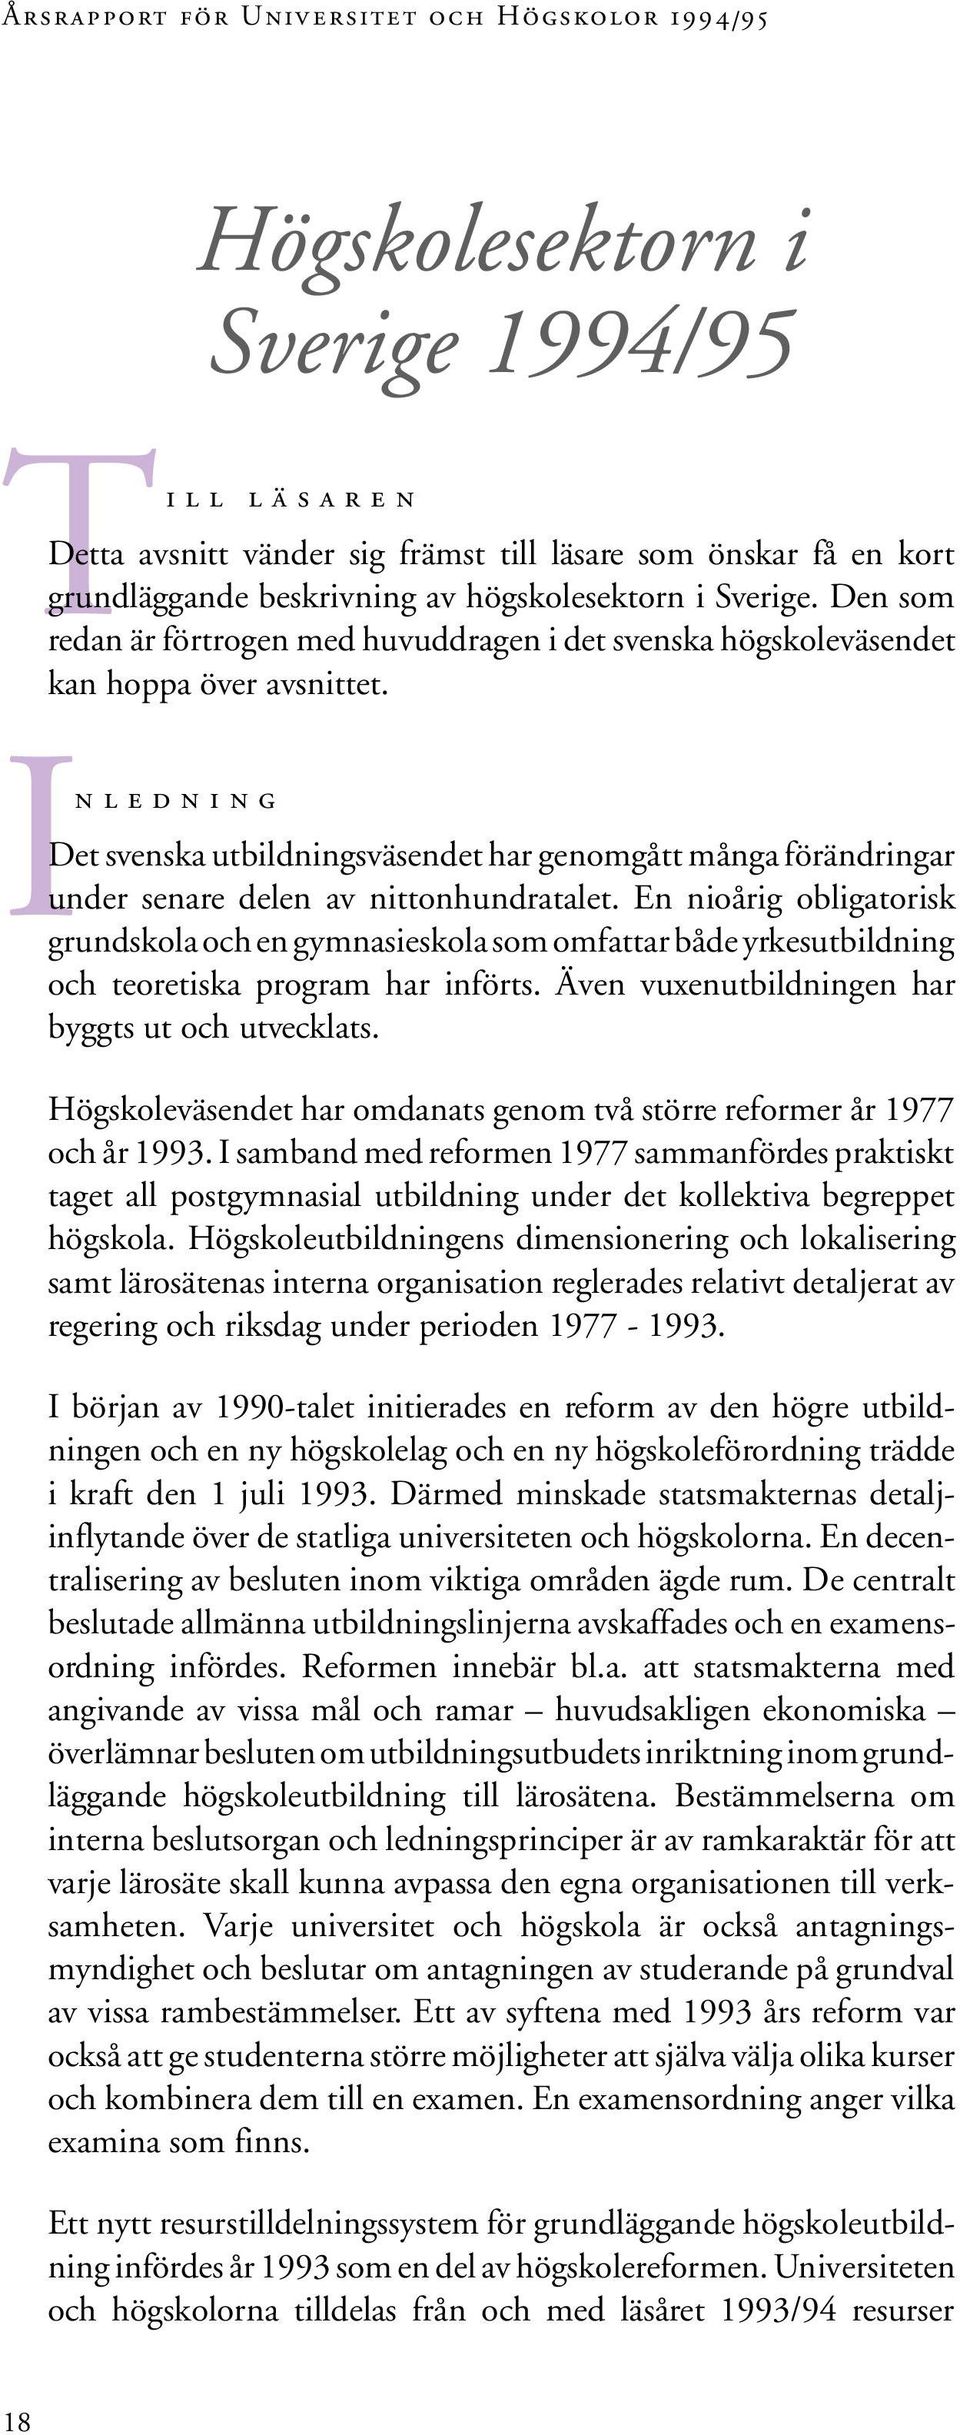 In ledning Det svenska utbildningsväsendet har genomgått många förändringar under senare delen av nittonhundratalet.